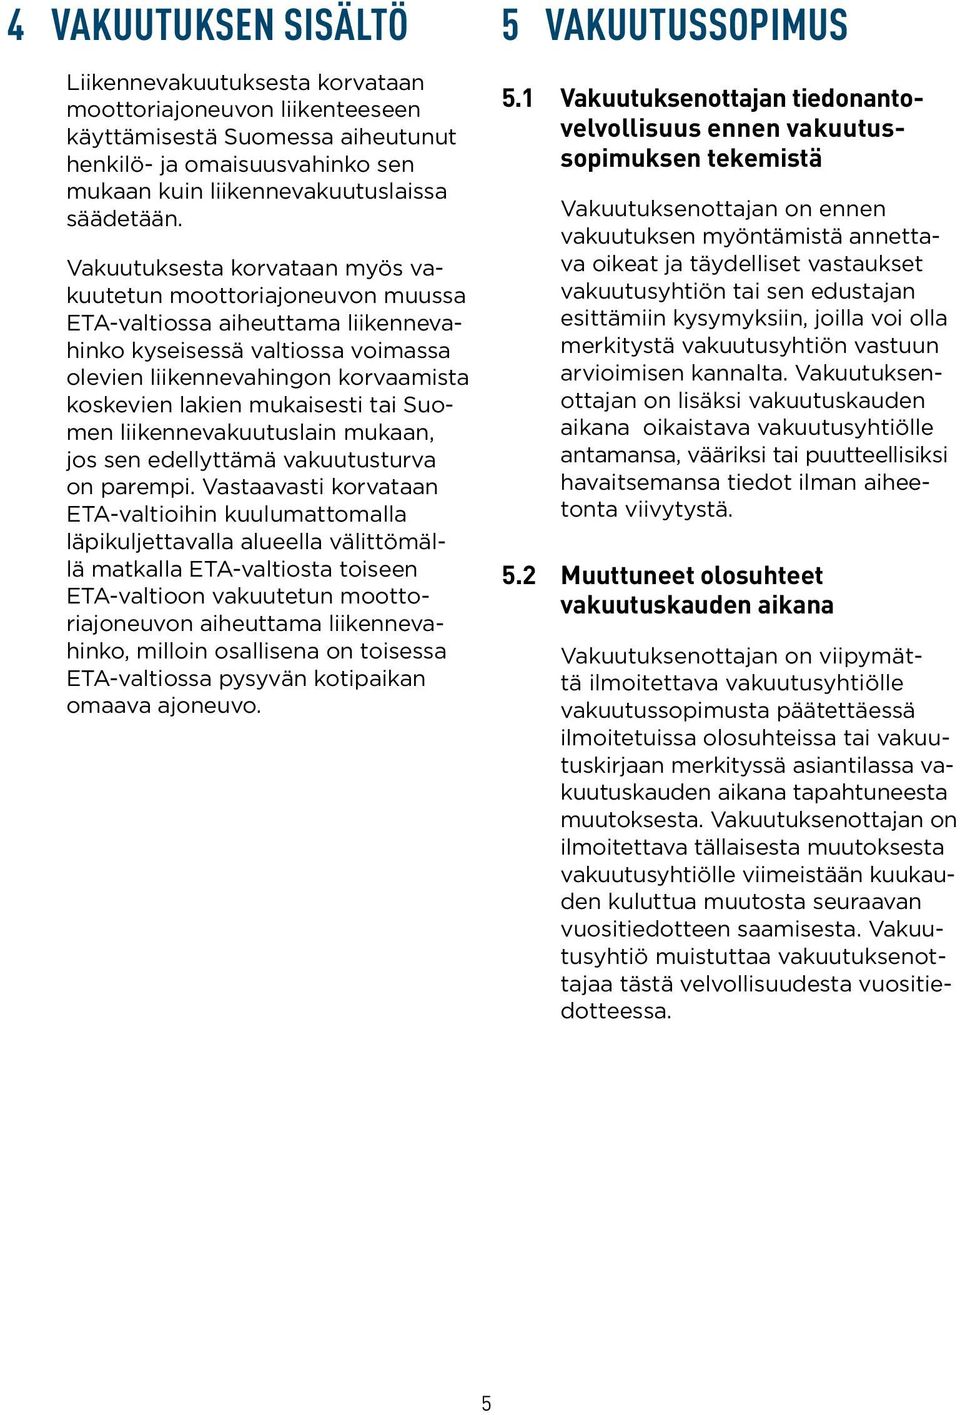 mukaisesti tai Suomen liikennevakuutuslain mukaan, jos sen edellyttämä vakuutusturva on parempi.